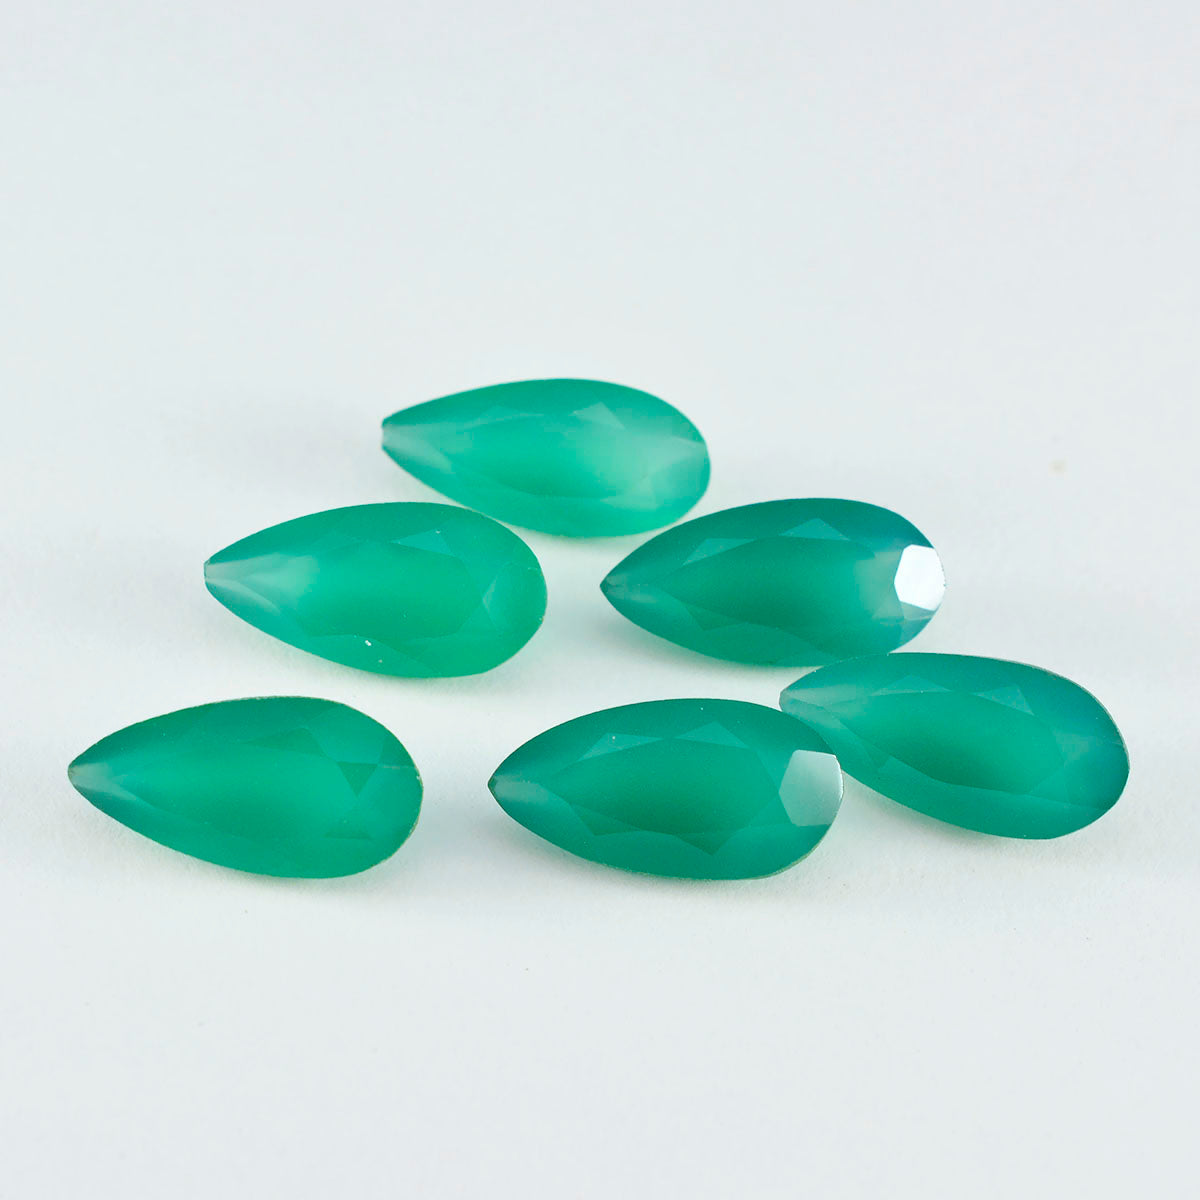 Riyogems 1 pieza de ónix verde real facetado, 7x10 mm, forma de pera, una piedra preciosa de calidad